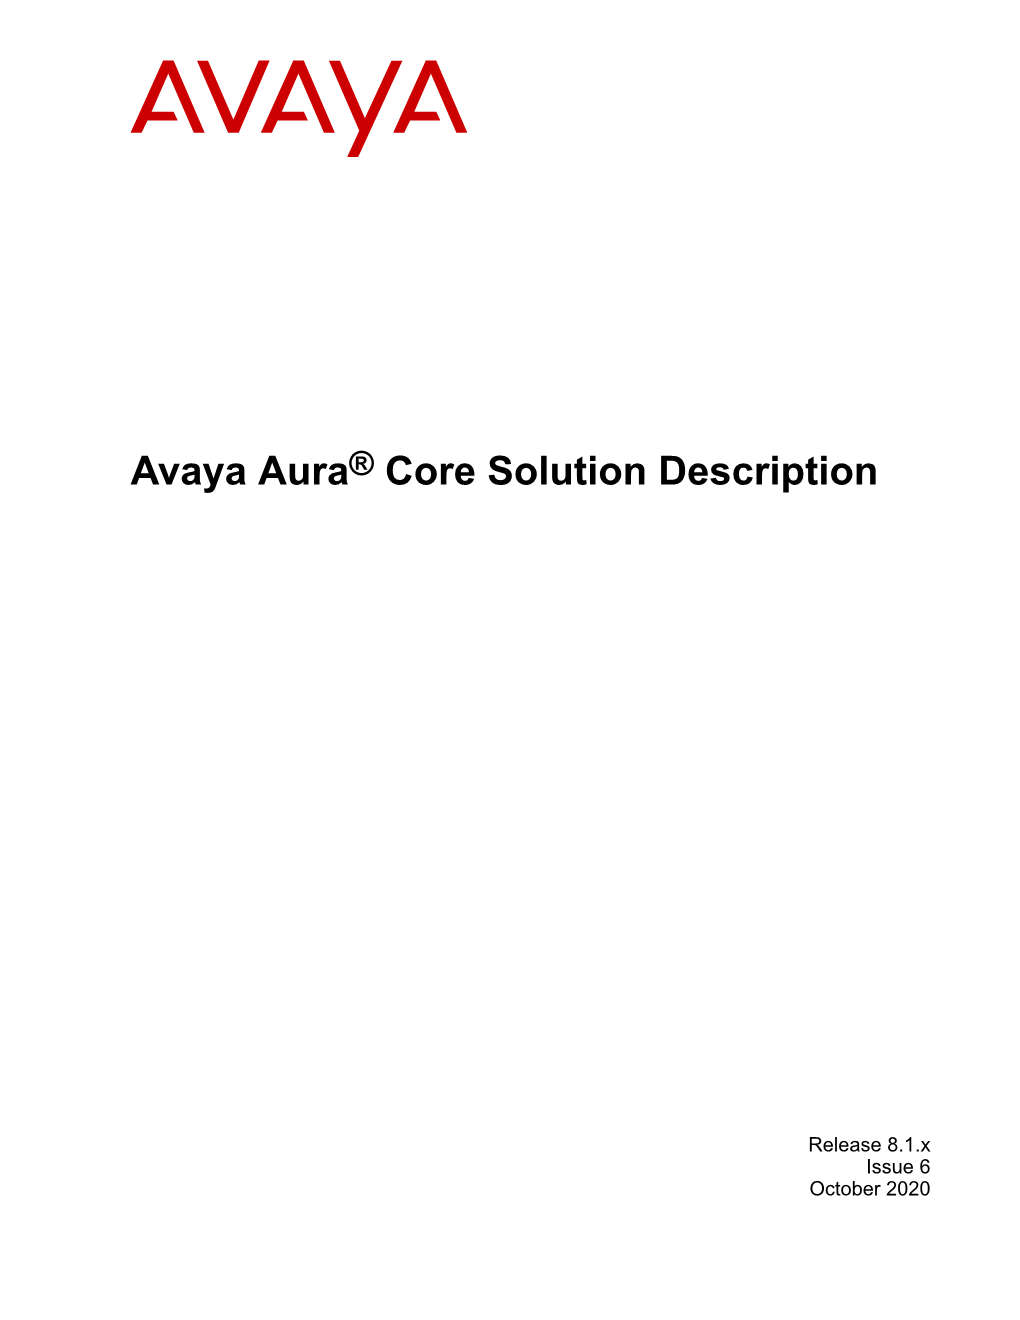 Avaya Aura® Core Solution Description Release 8.1.X